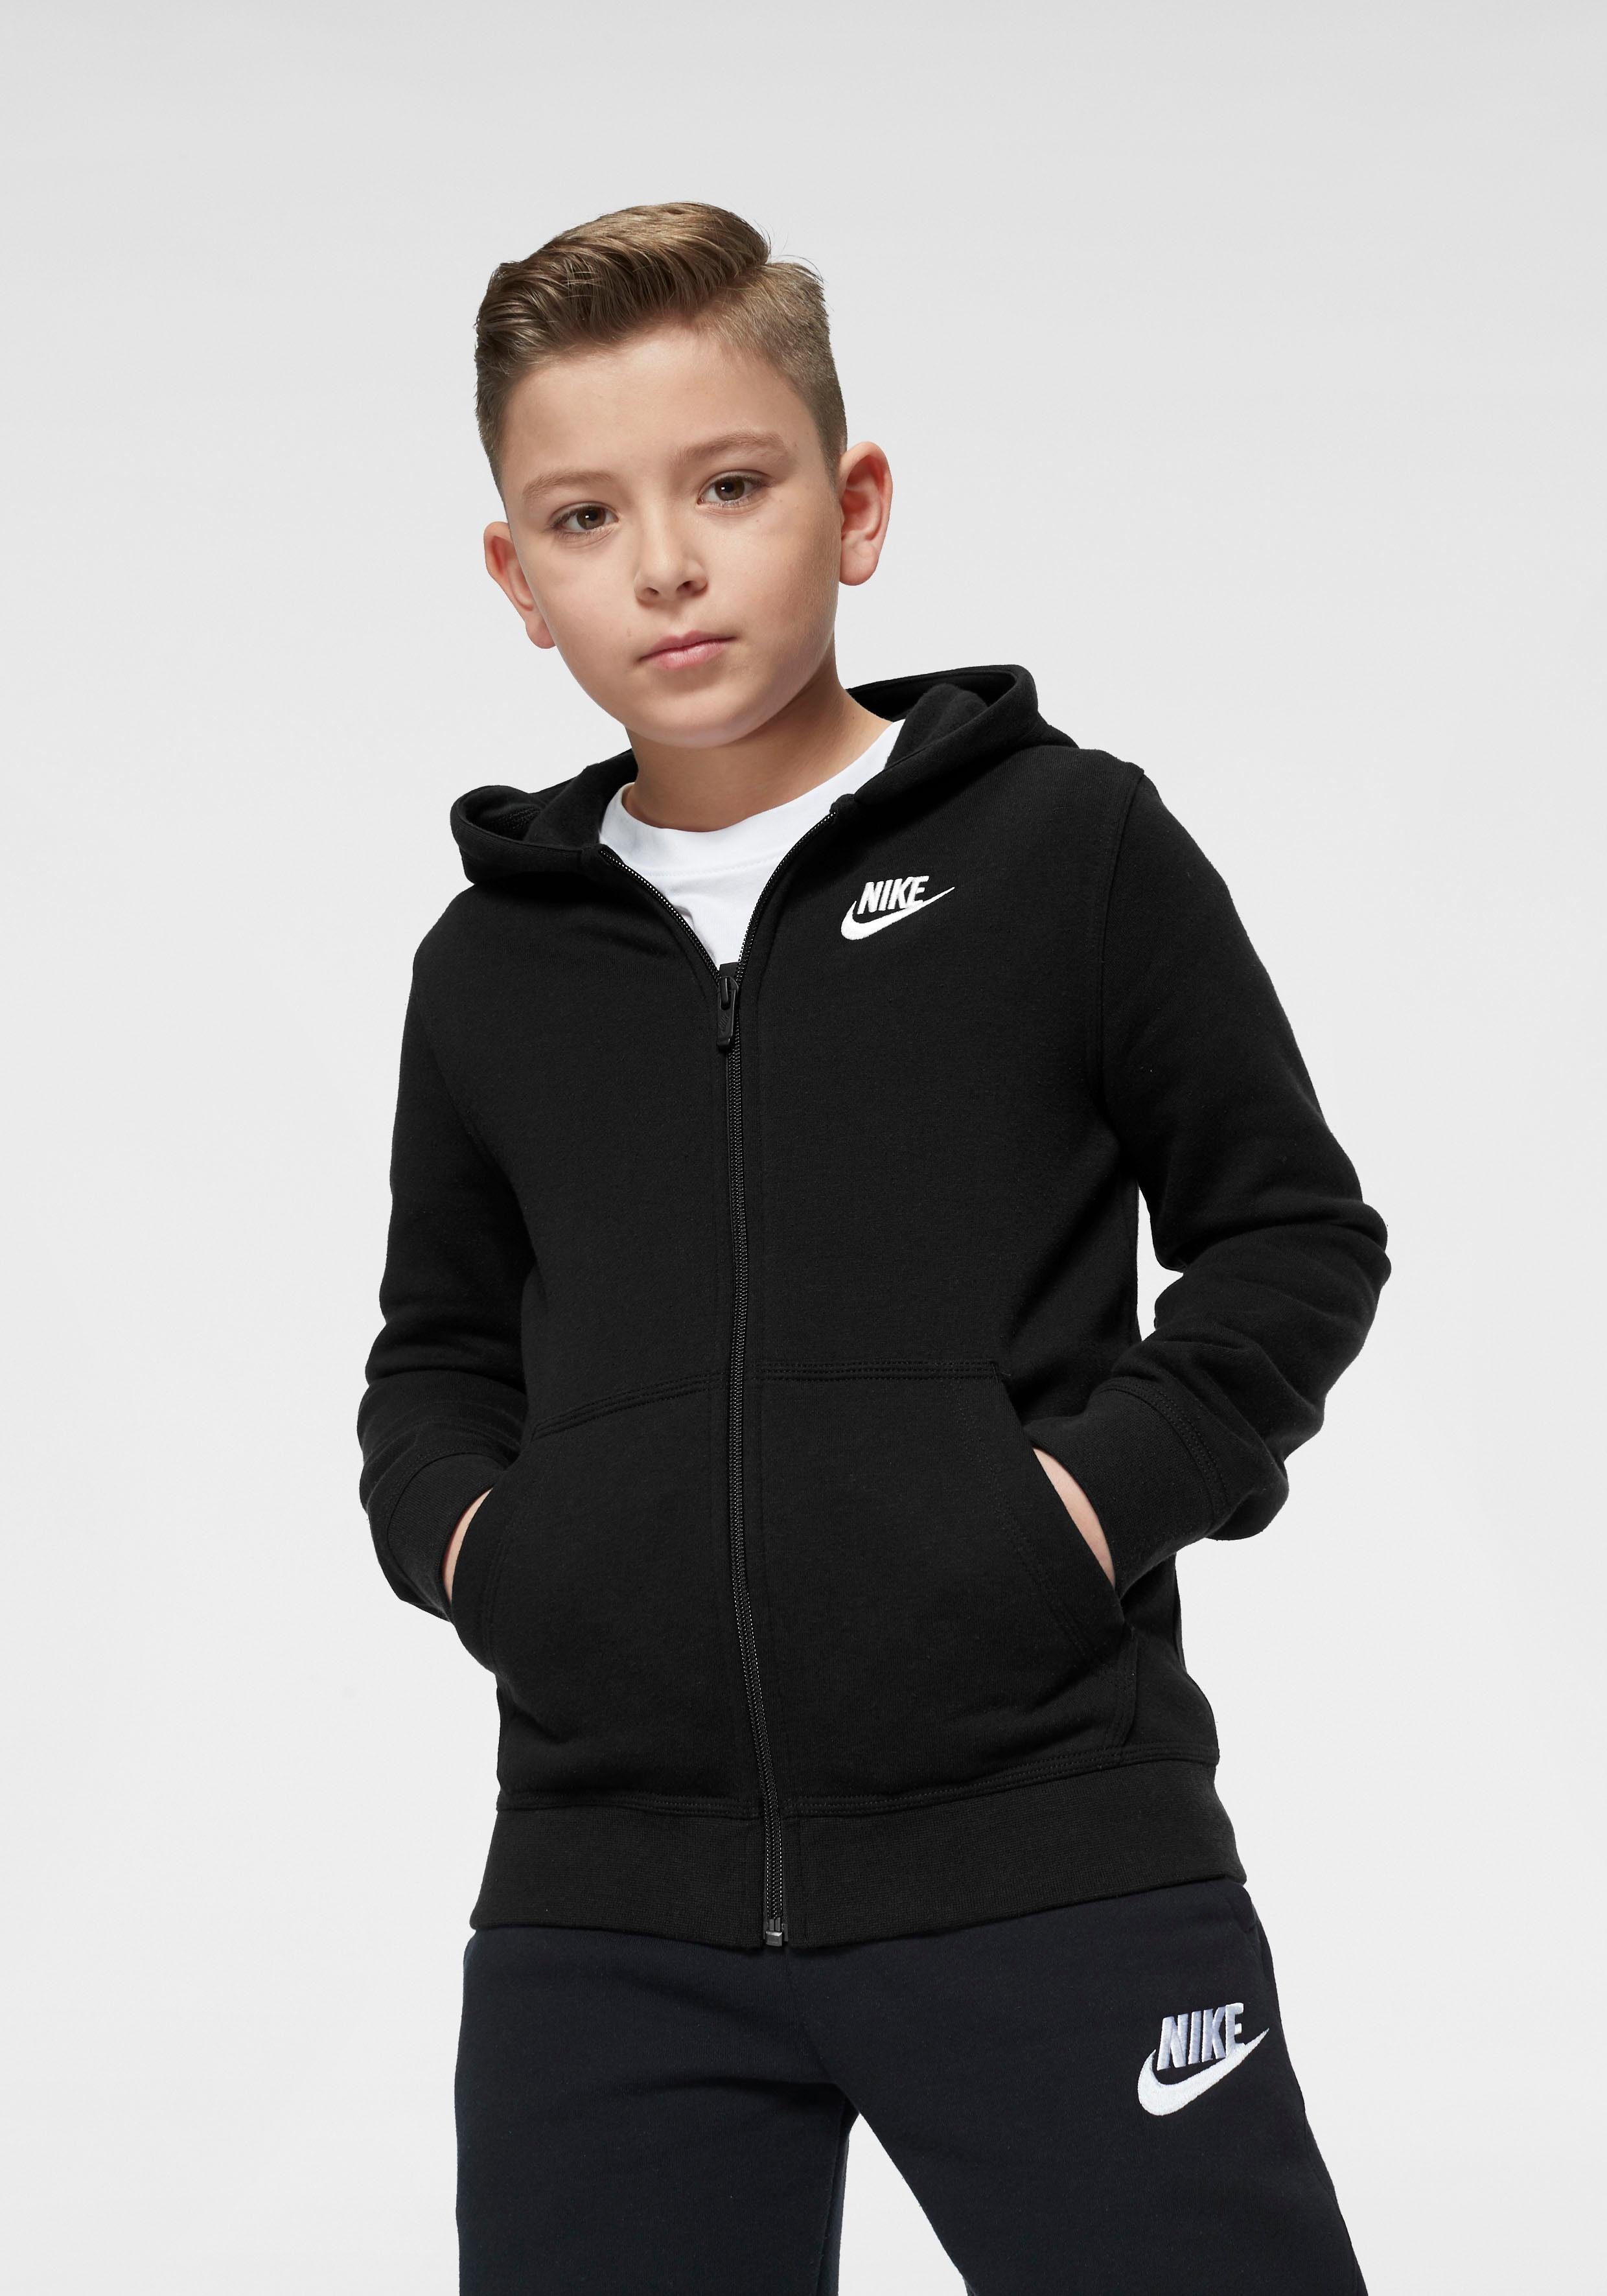 Nike Jungen Sweatjacken online kaufen | OTTO